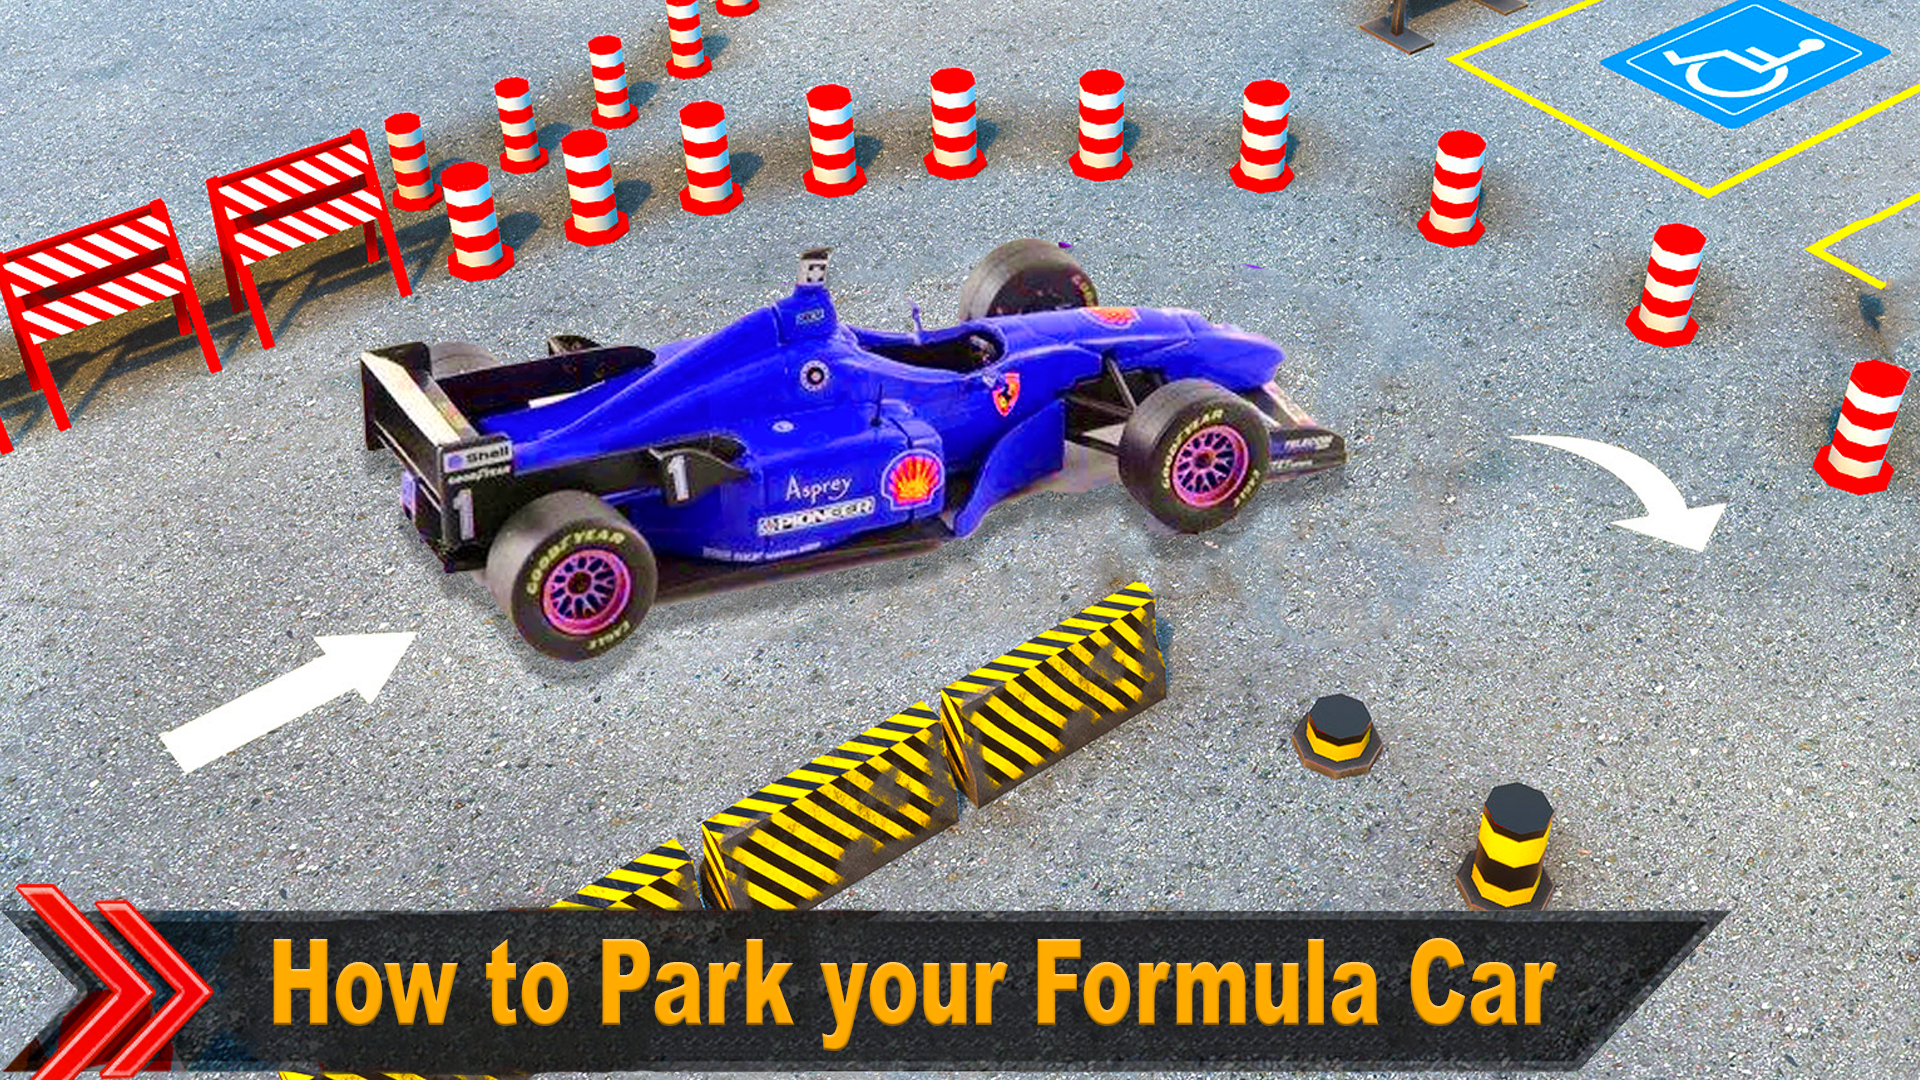 Park Your Car, Games